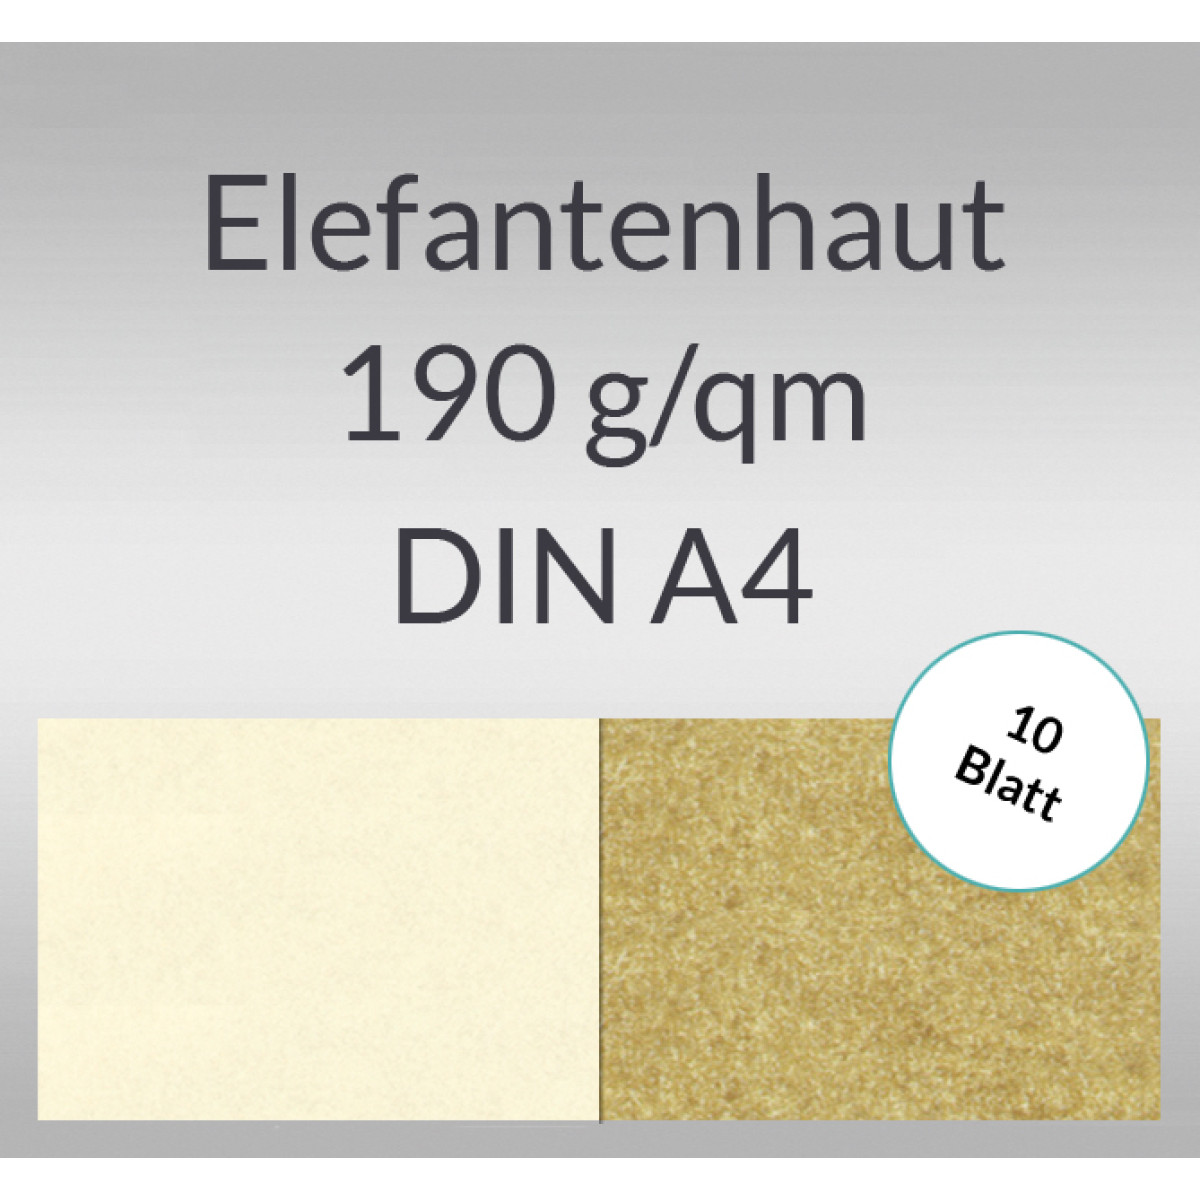 Elefantenhaut 190 g/qm DIN A4 - 10 Blatt